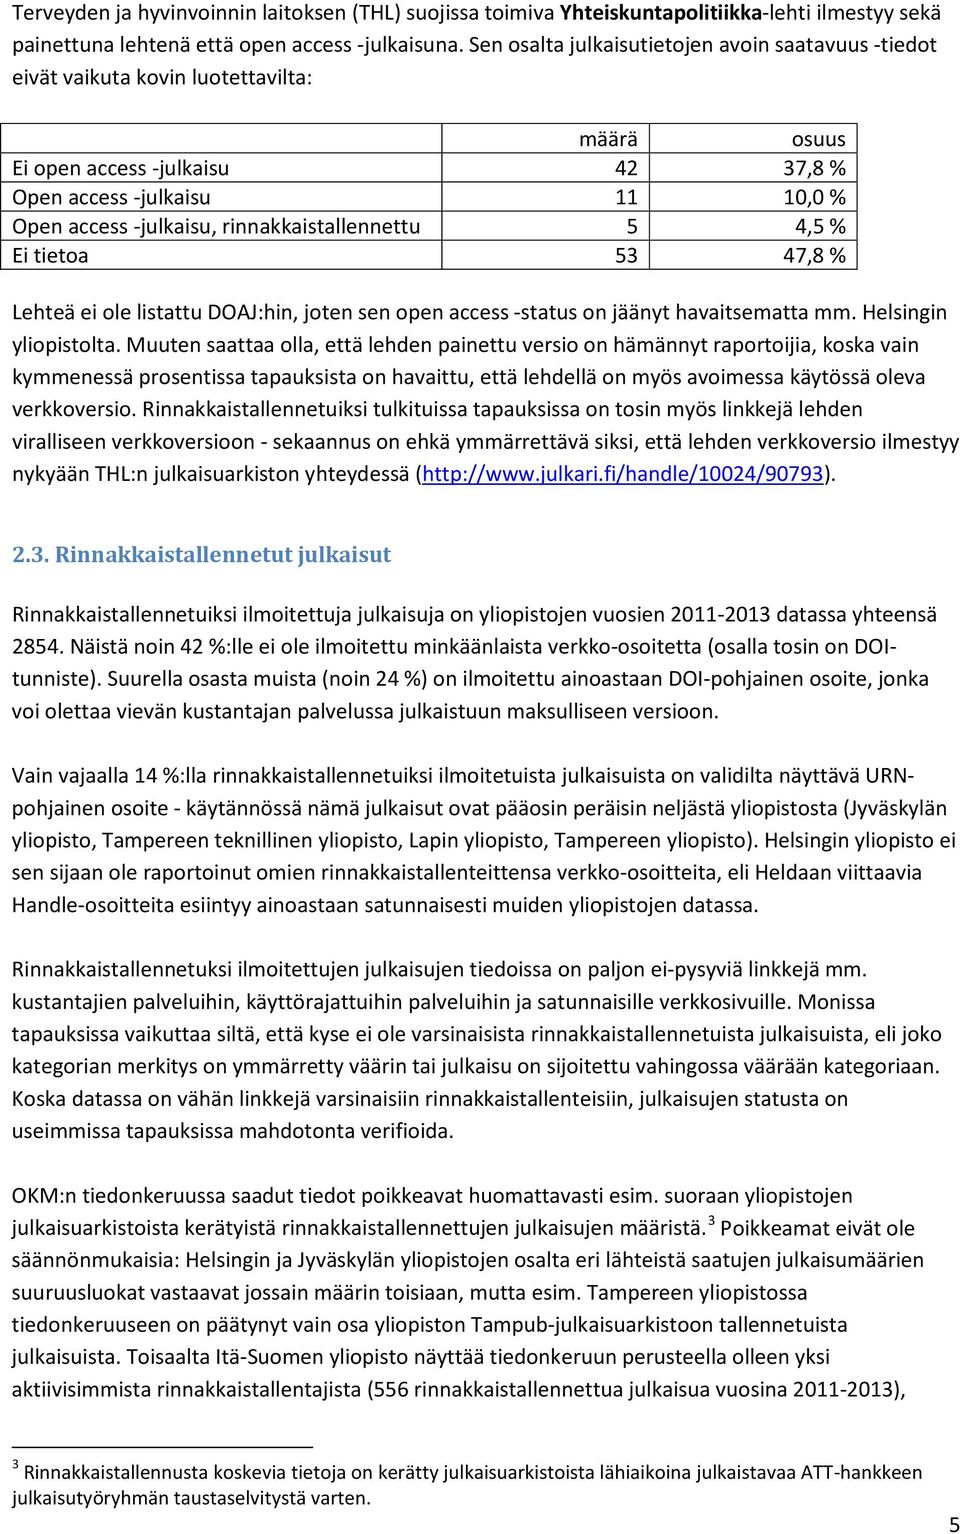 rinnakkaistallennettu 5 4,5 % Ei tietoa 53 47,8 % Lehteä ei ole listattu DOAJ:hin, joten sen open access -status on jäänyt havaitsematta mm. Helsingin yliopistolta.